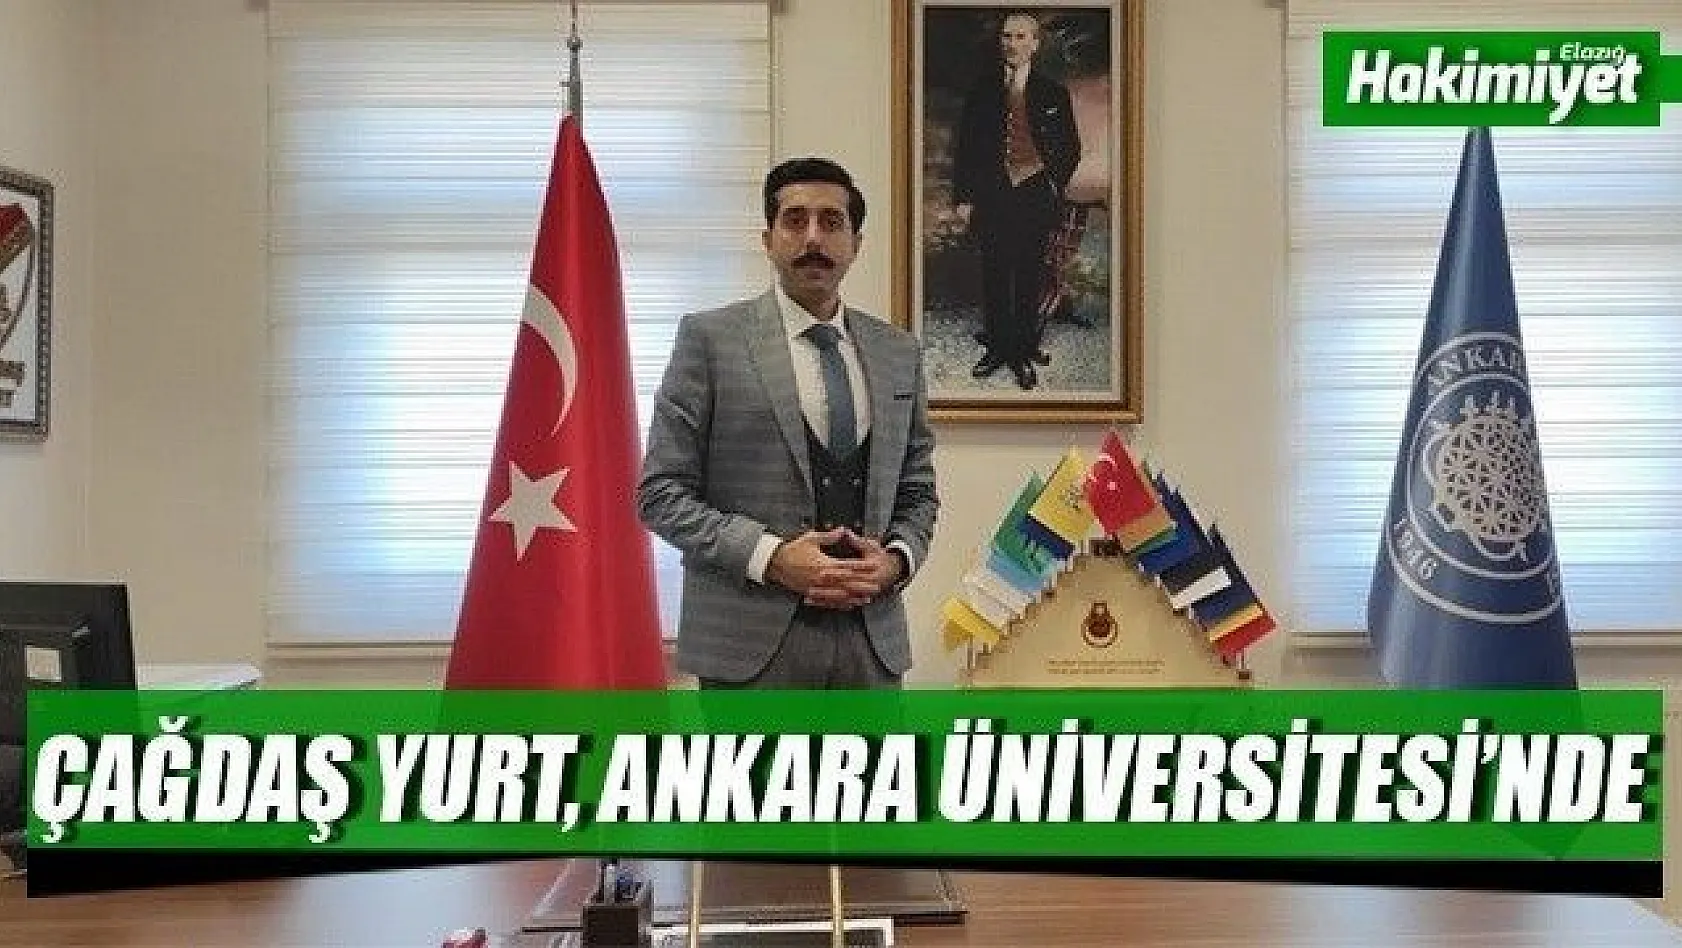 Hemşerimiz Yurt'a, Ankara Üniversitesi'nde görev